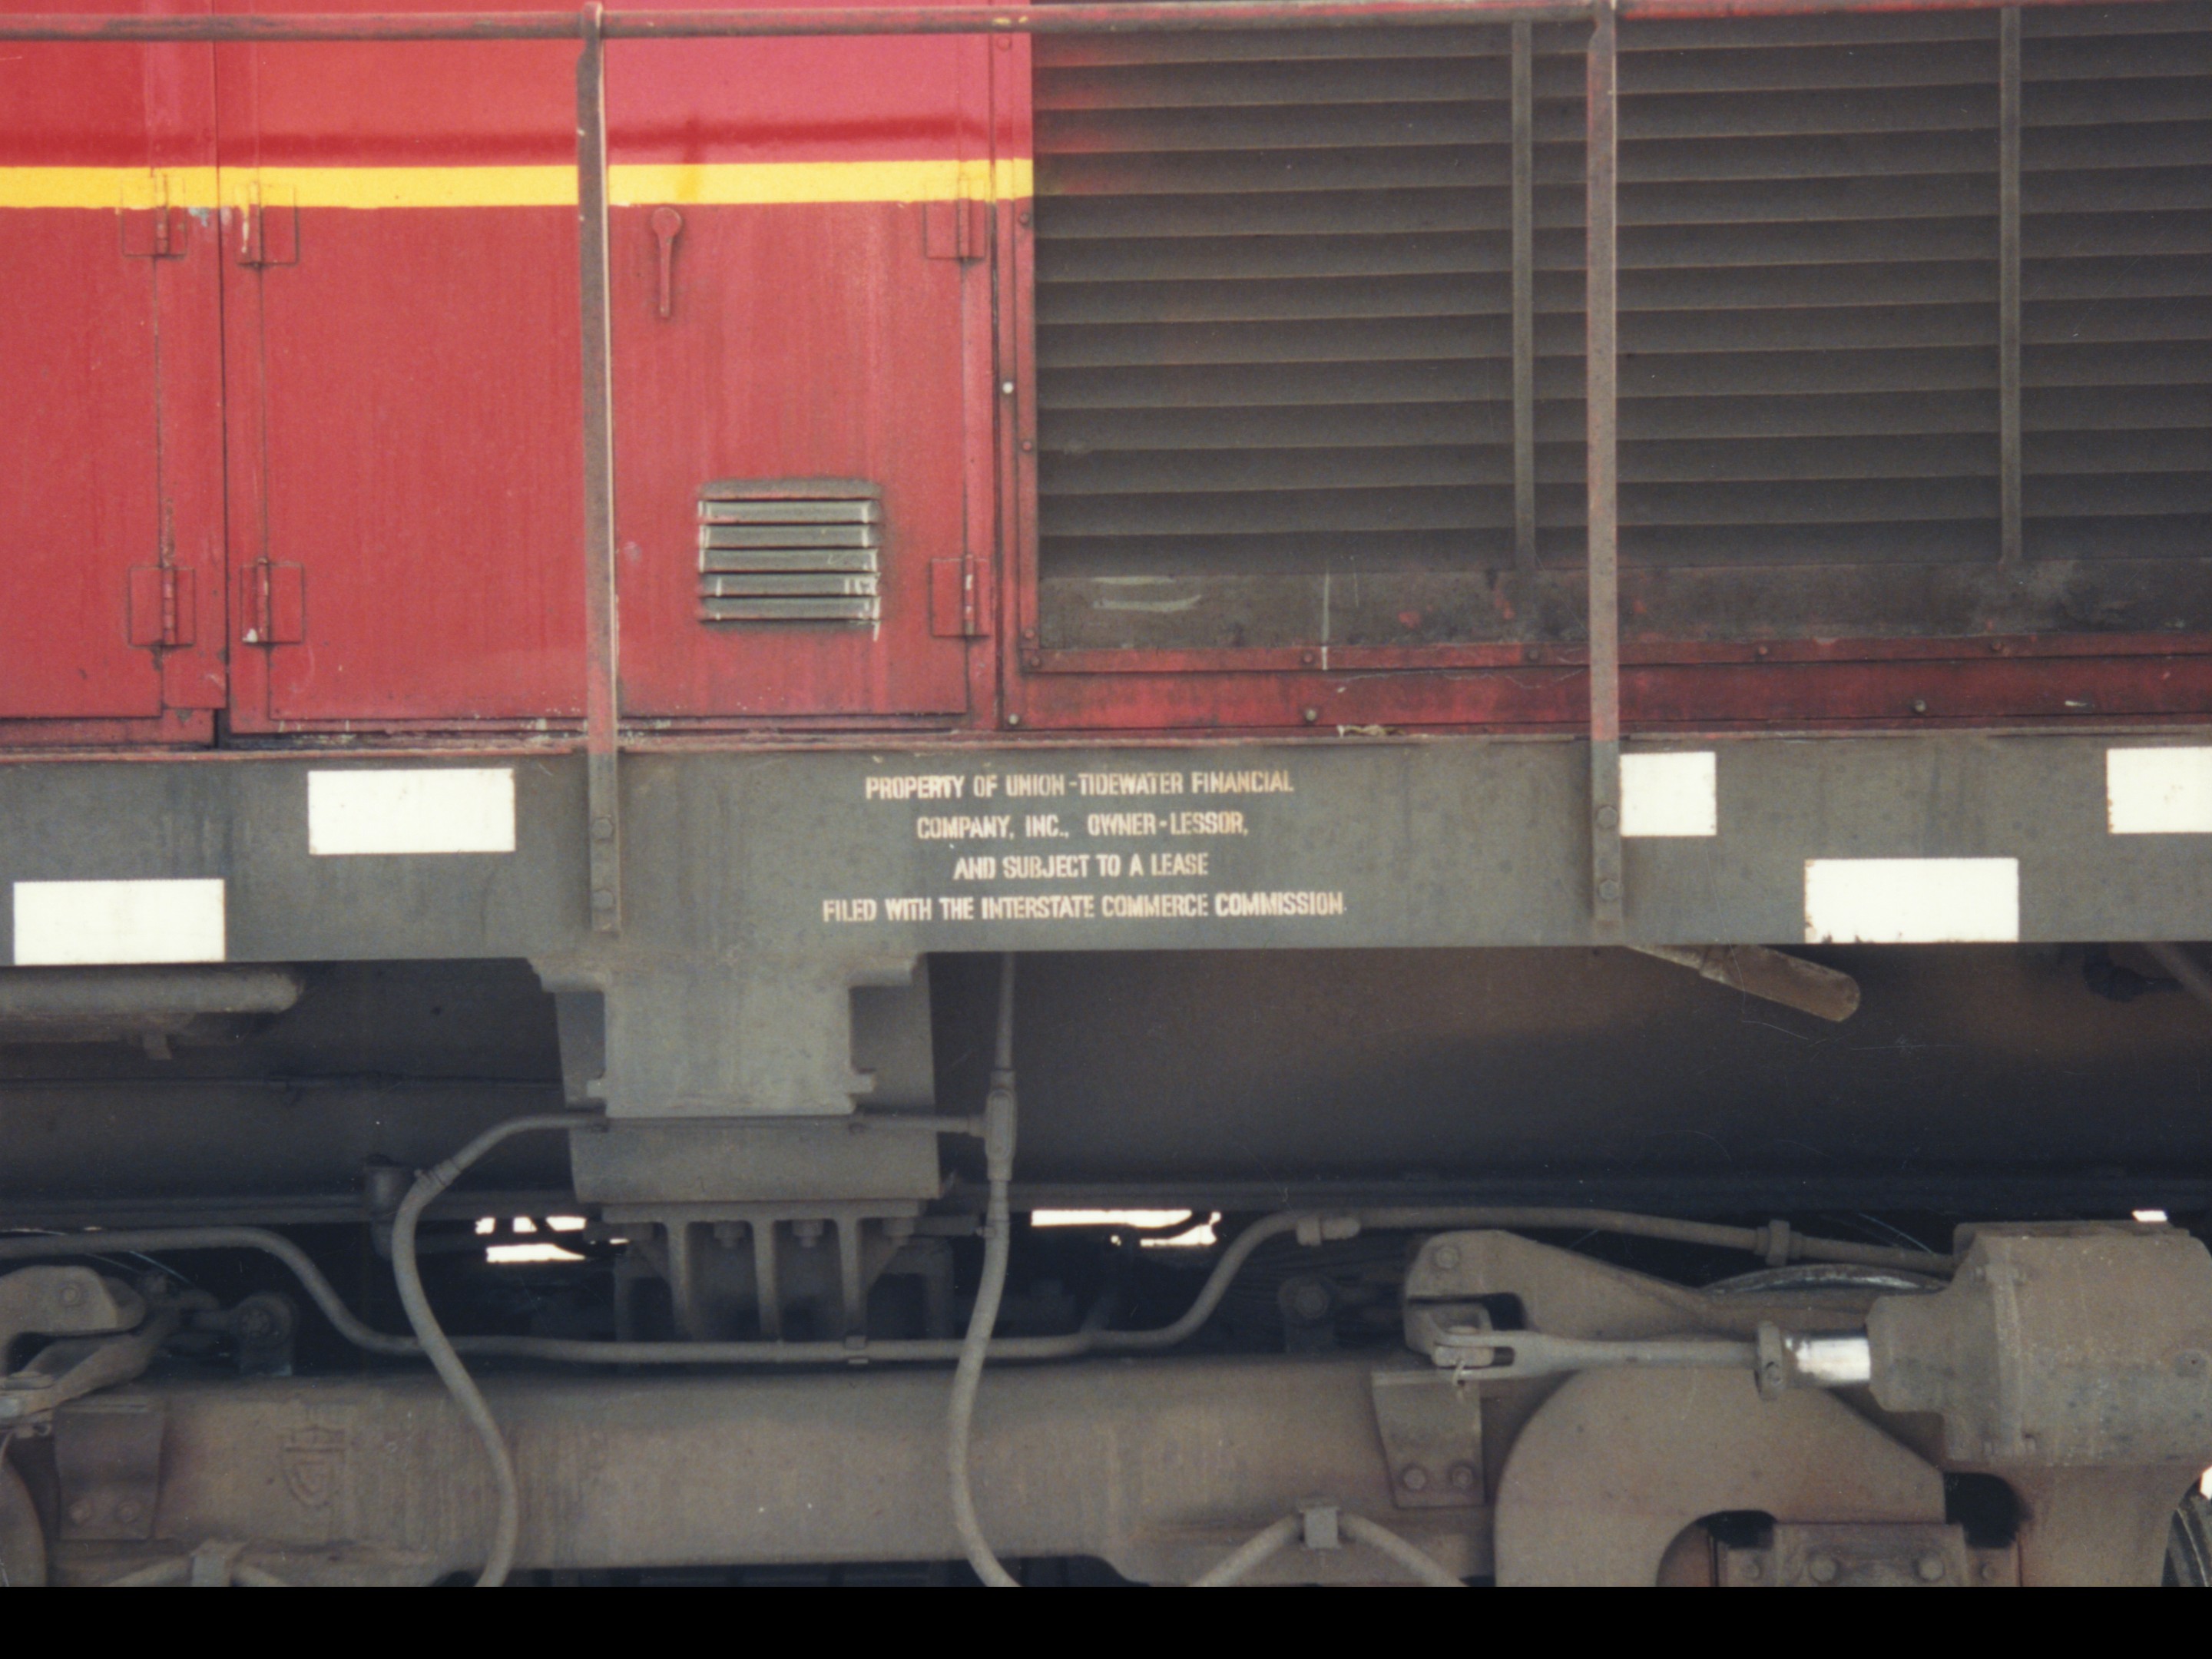 IAIS 850 at Altoona, IA on 14-Feb-1994